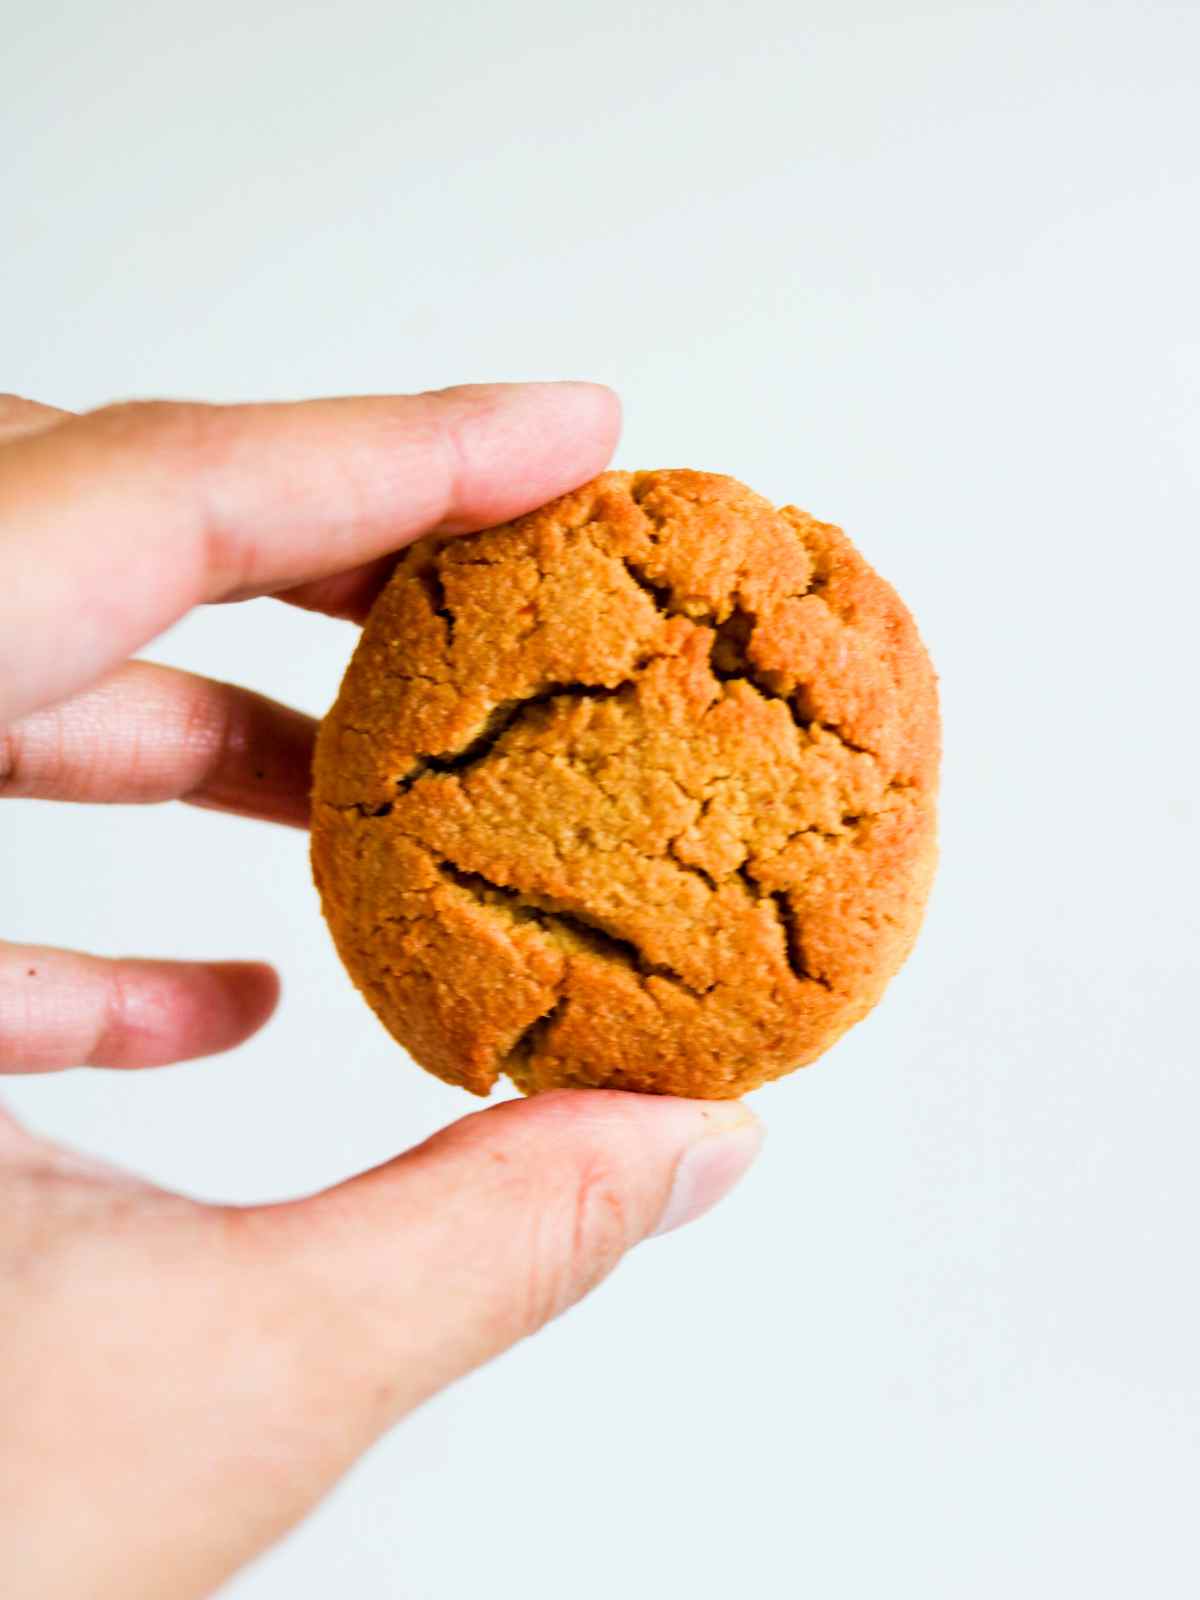 Holding pumpkin almond flour cookie in hand.